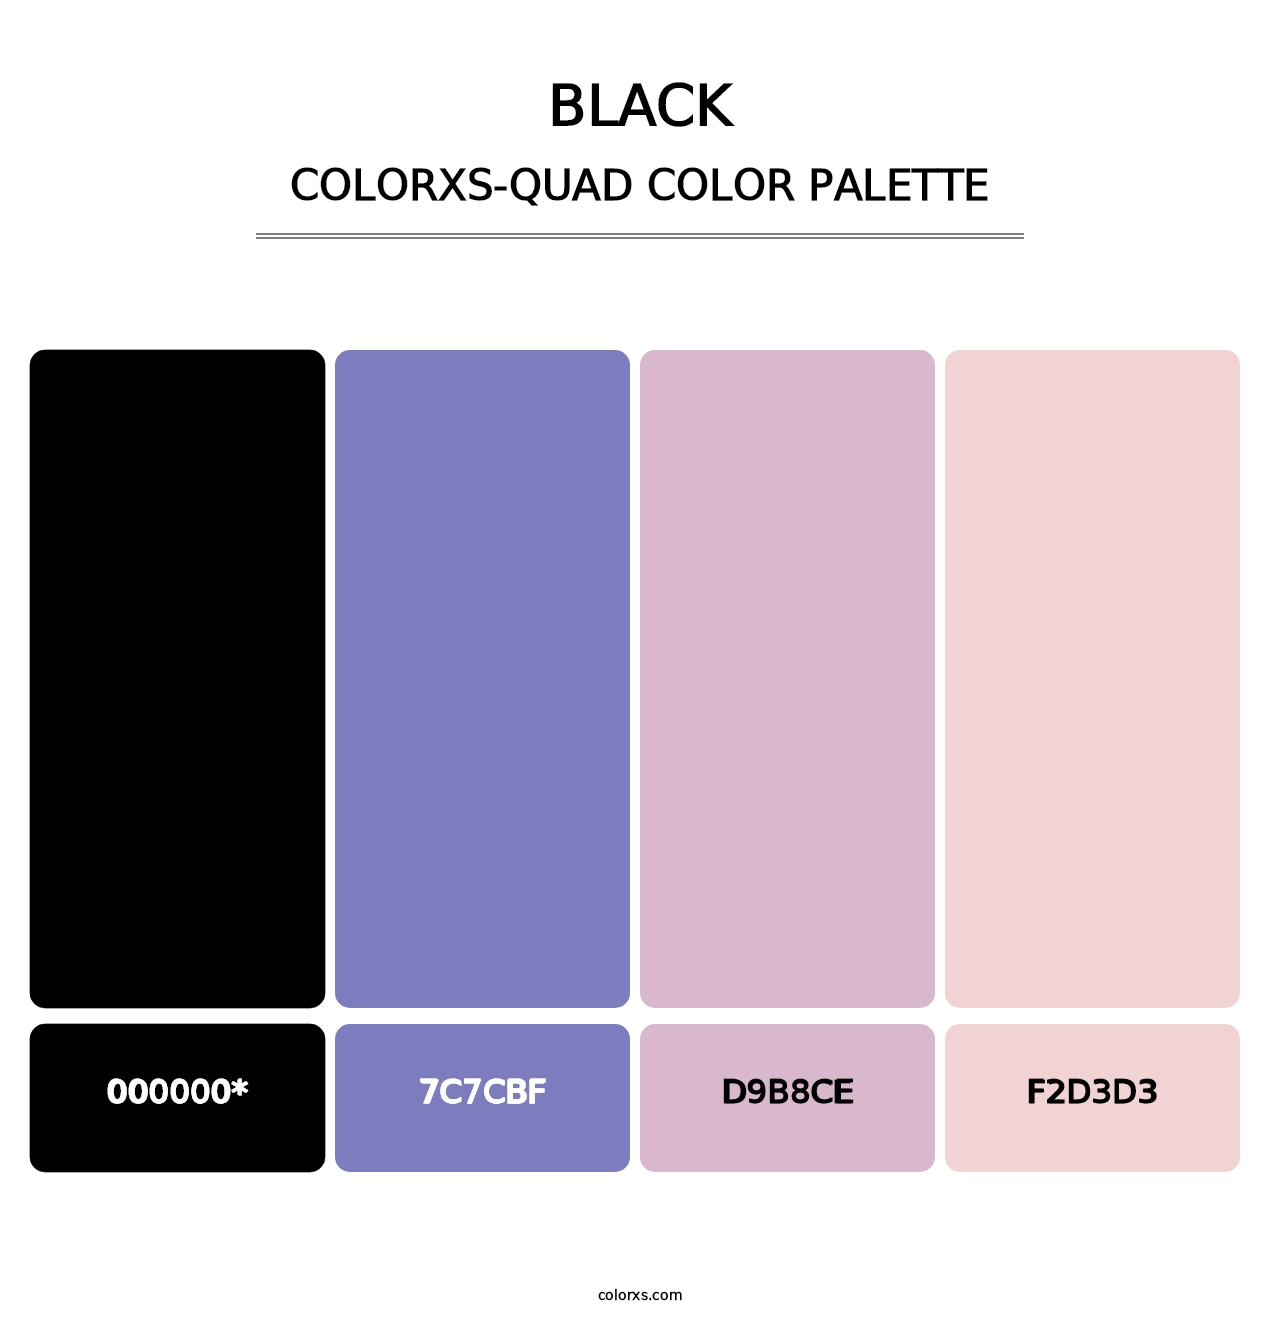 Black - Colorxs Quad Palette